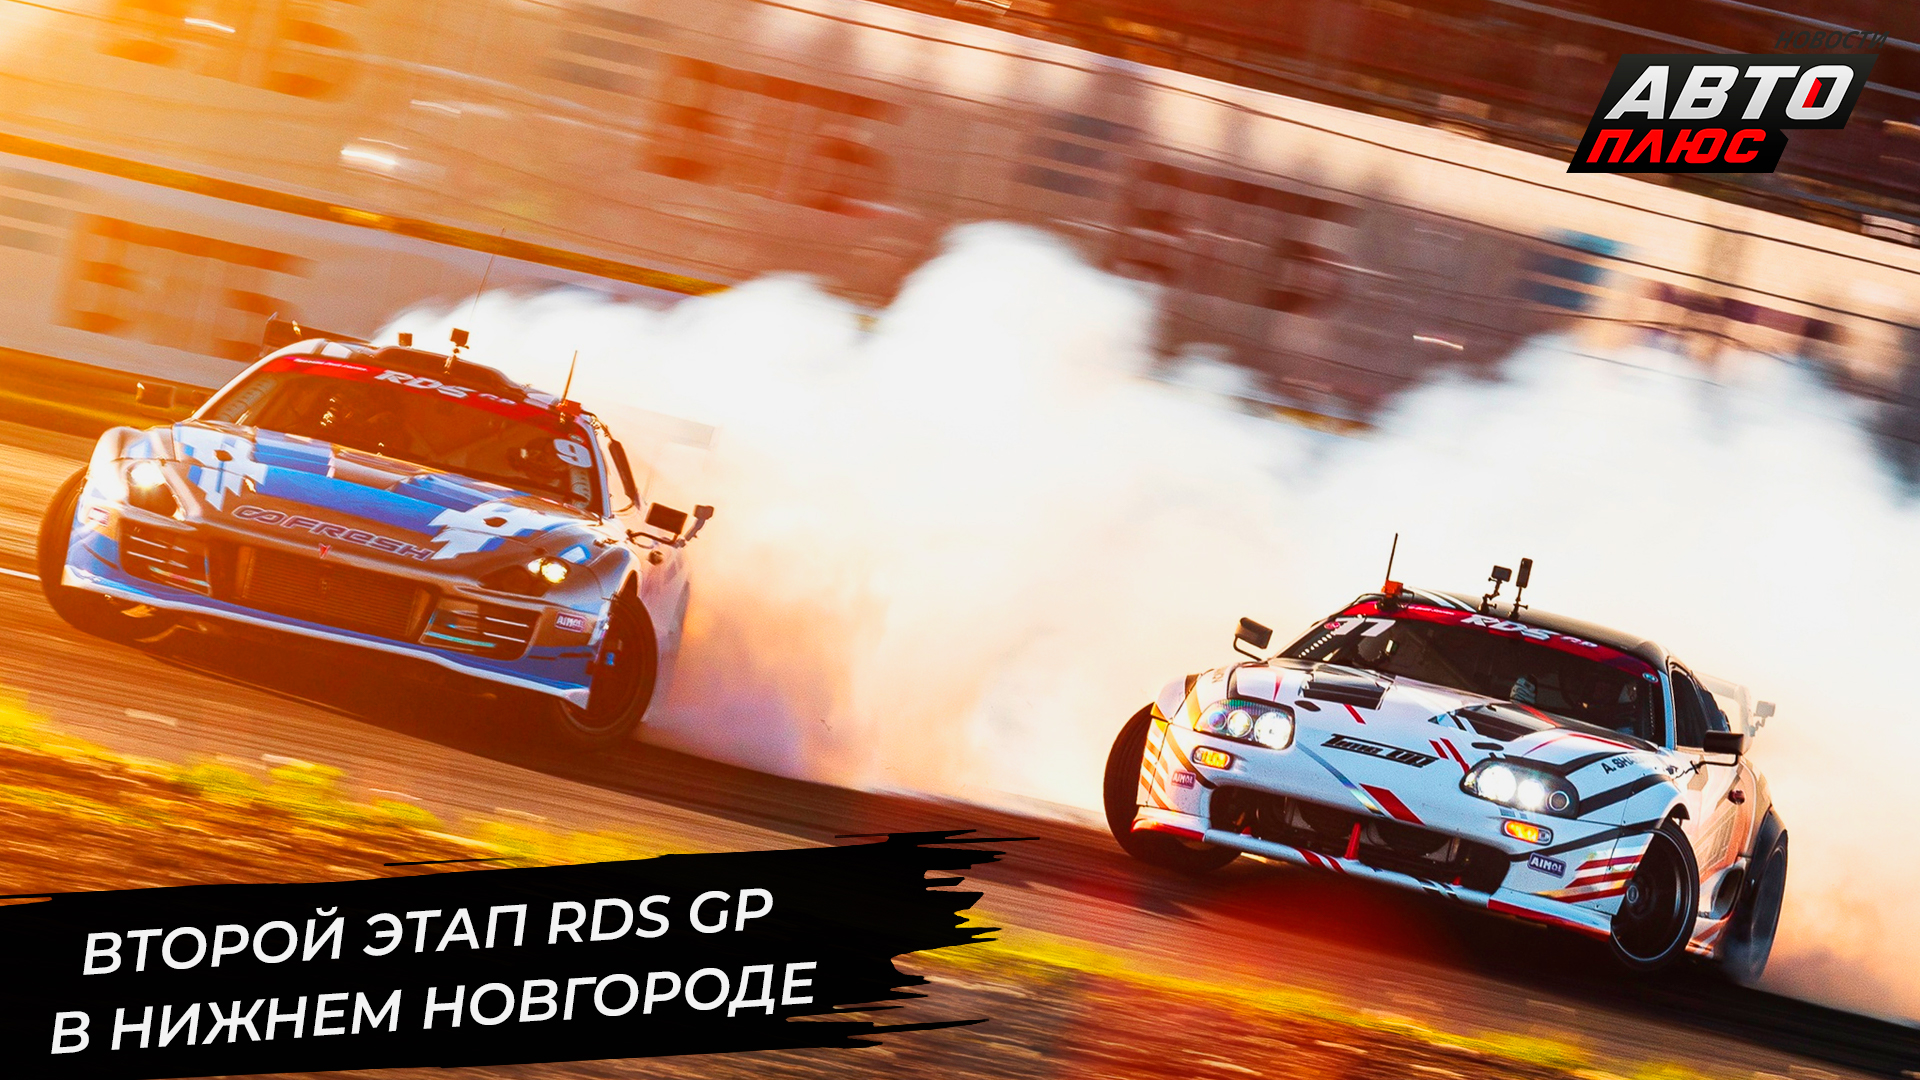 Второй этап RDS GP состоялся в Нижнем Новгороде 